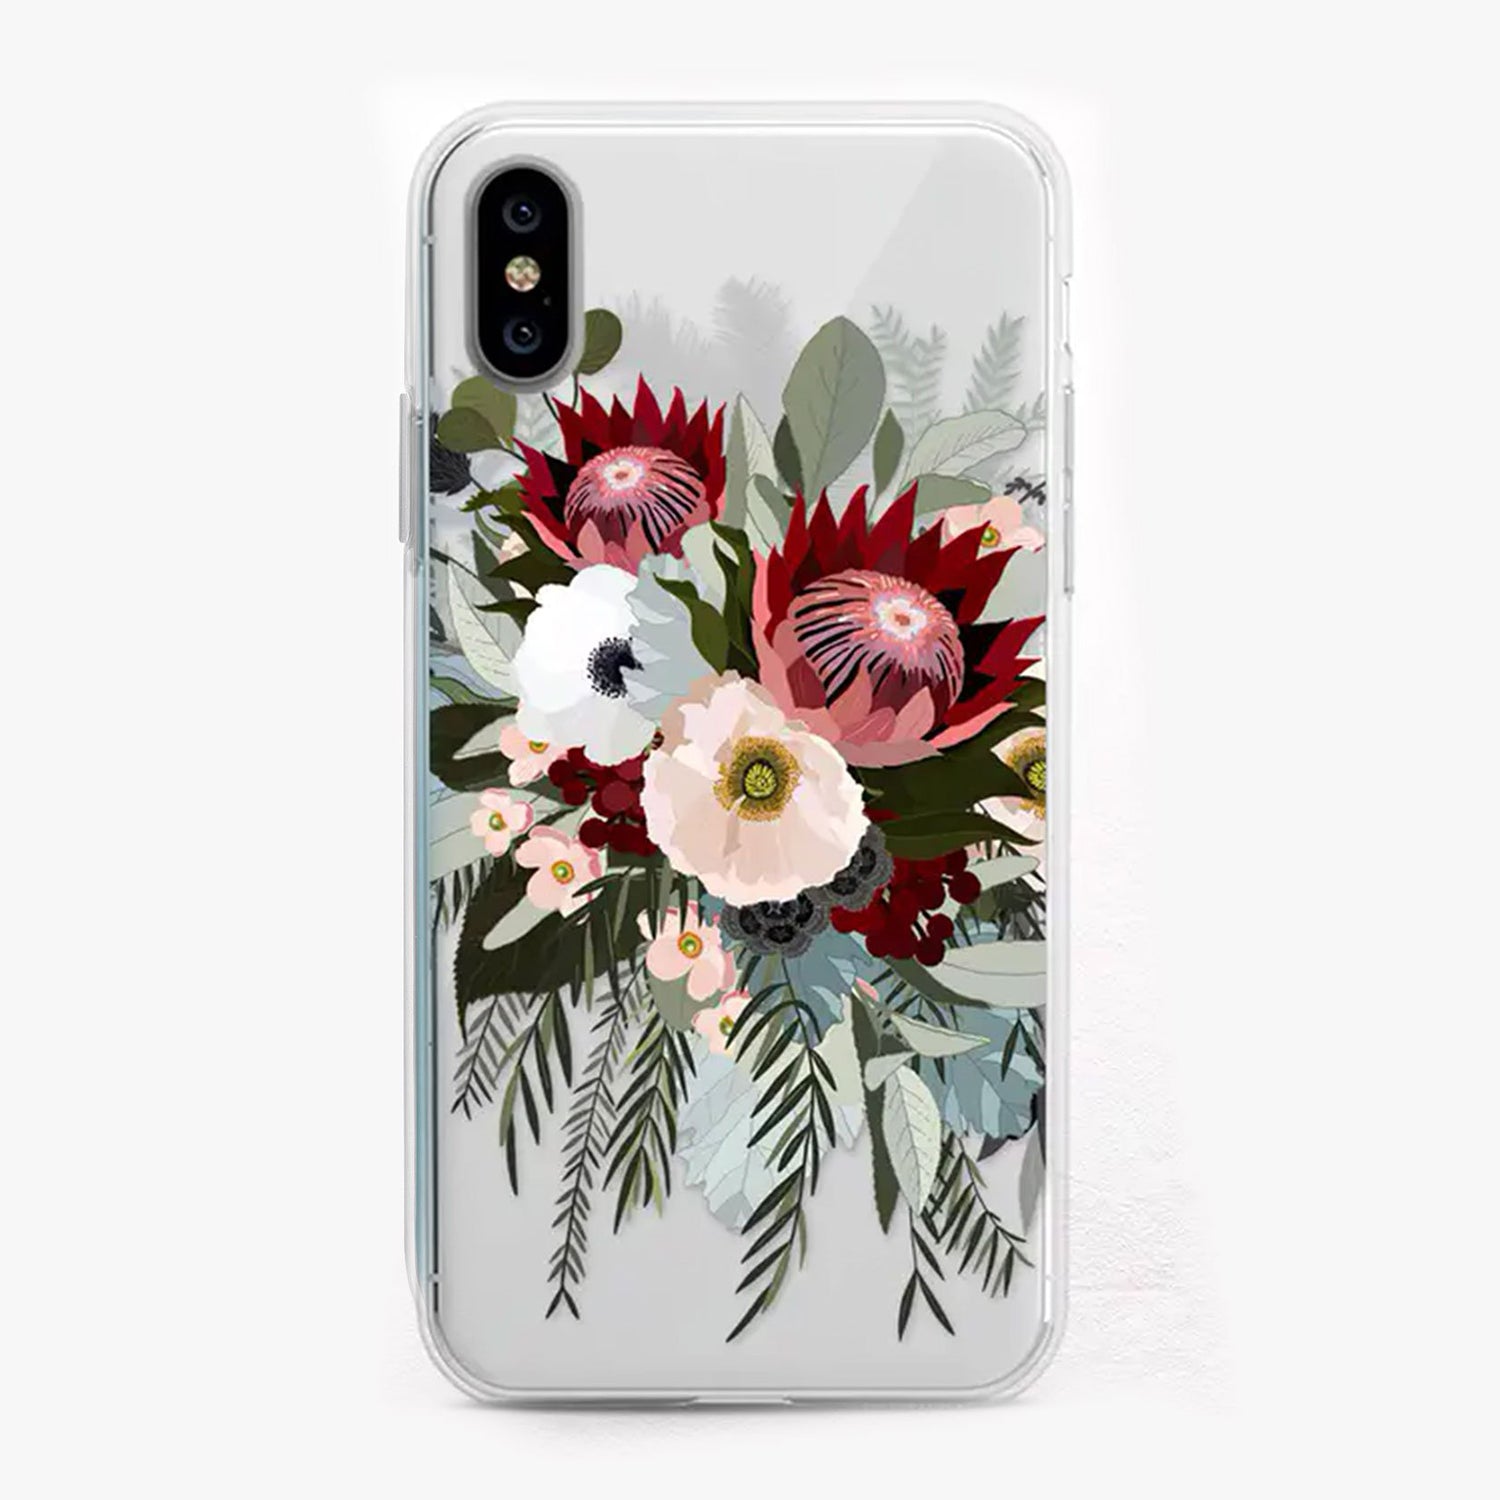 Protea Bouquet iPhone Case by Onesweetorange